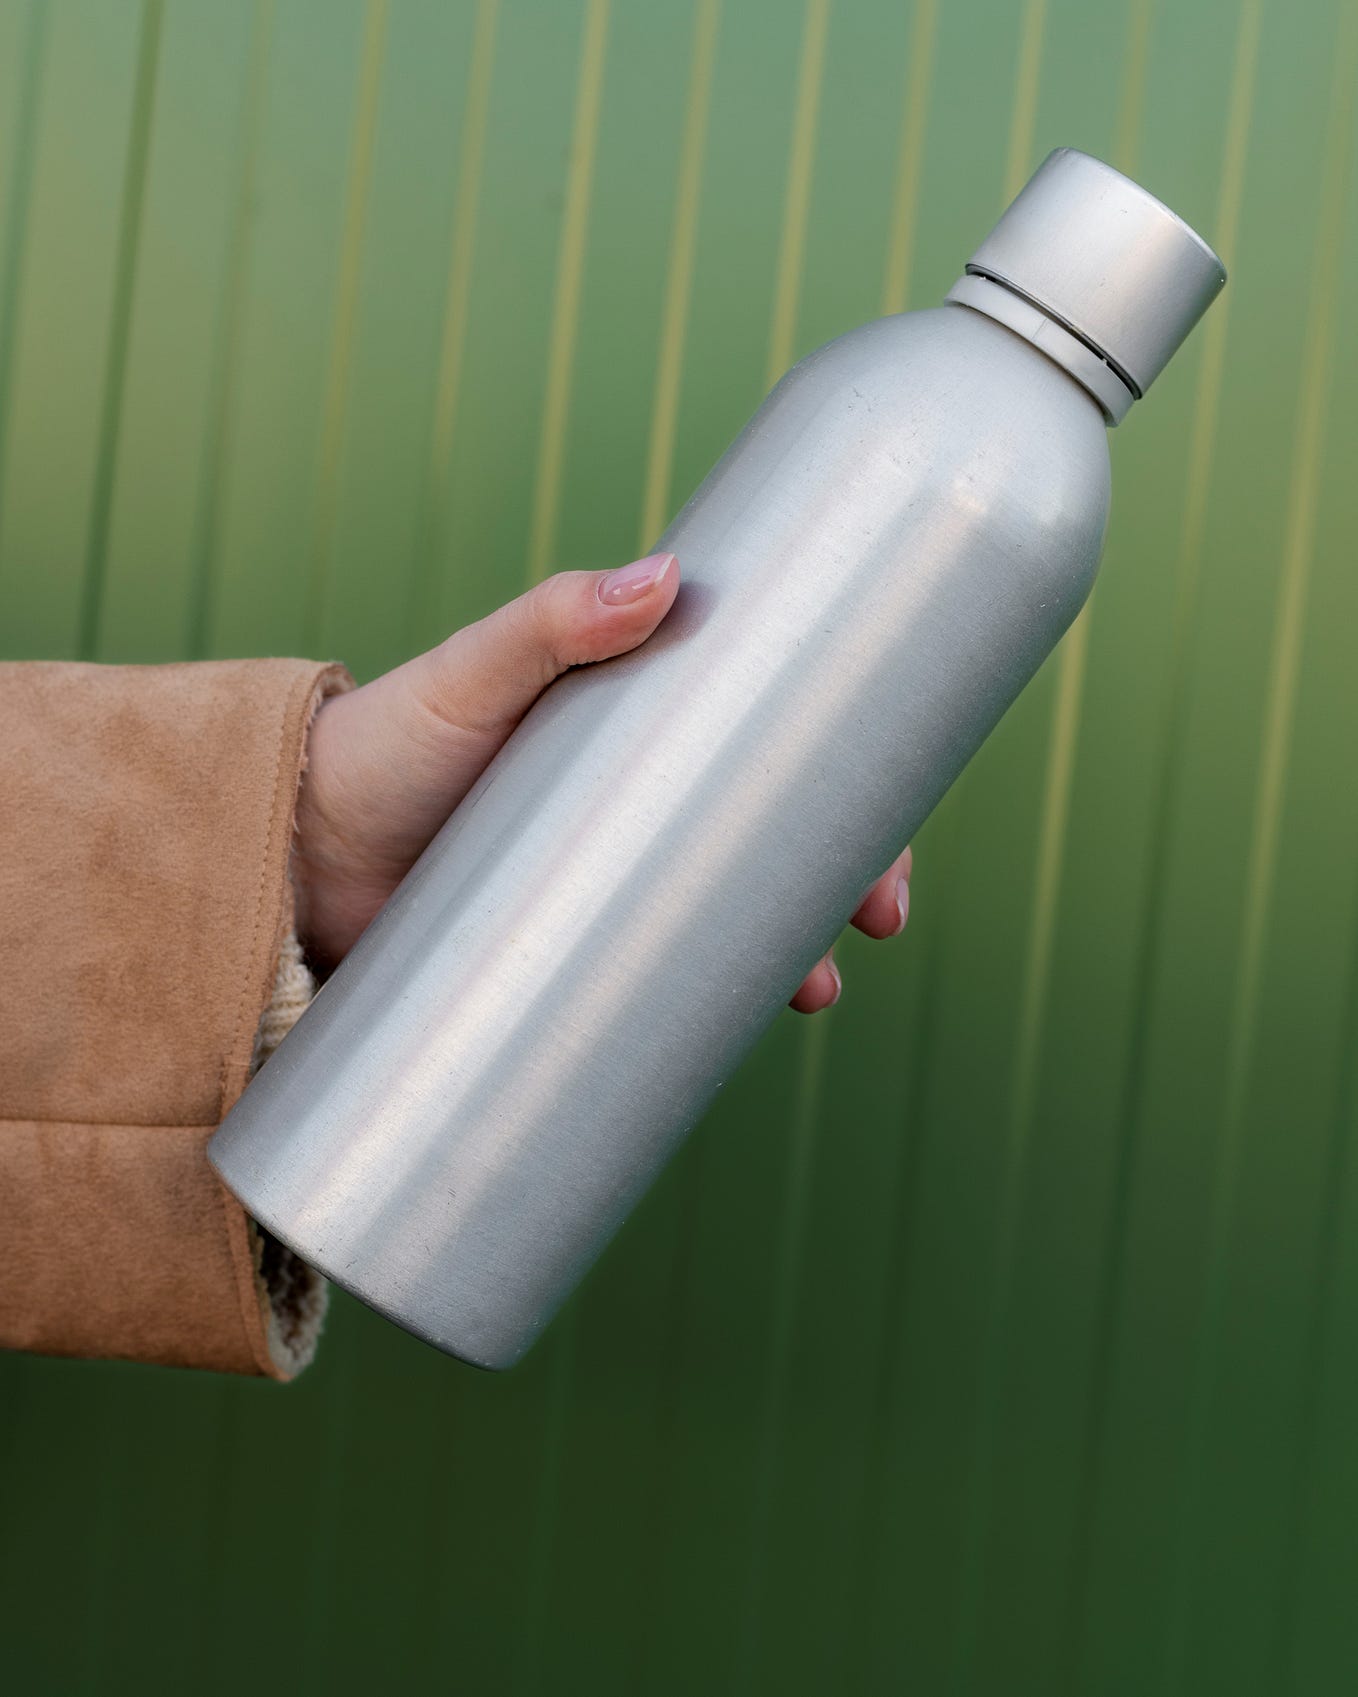 Owala Water Bottle vs Hydro Flask, by Qaiserg